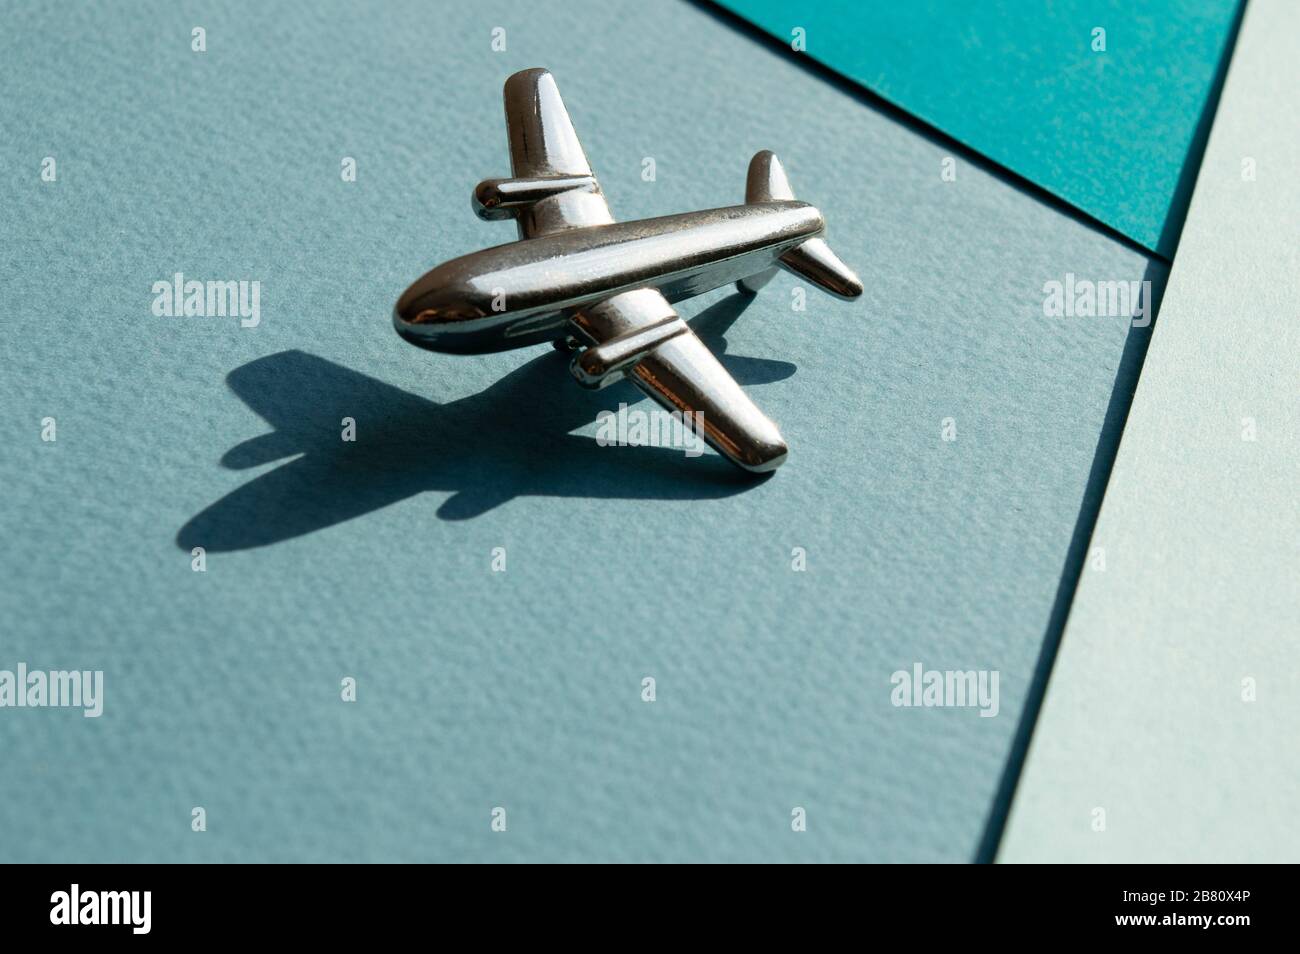 Metallfigur des kleinen Flugzeugs mit Schatten auf Turqouise und hellblauem Geometriehintergrund. Flatlay, Draufsicht, Layout. Luftfahrtindustrie Stockfoto